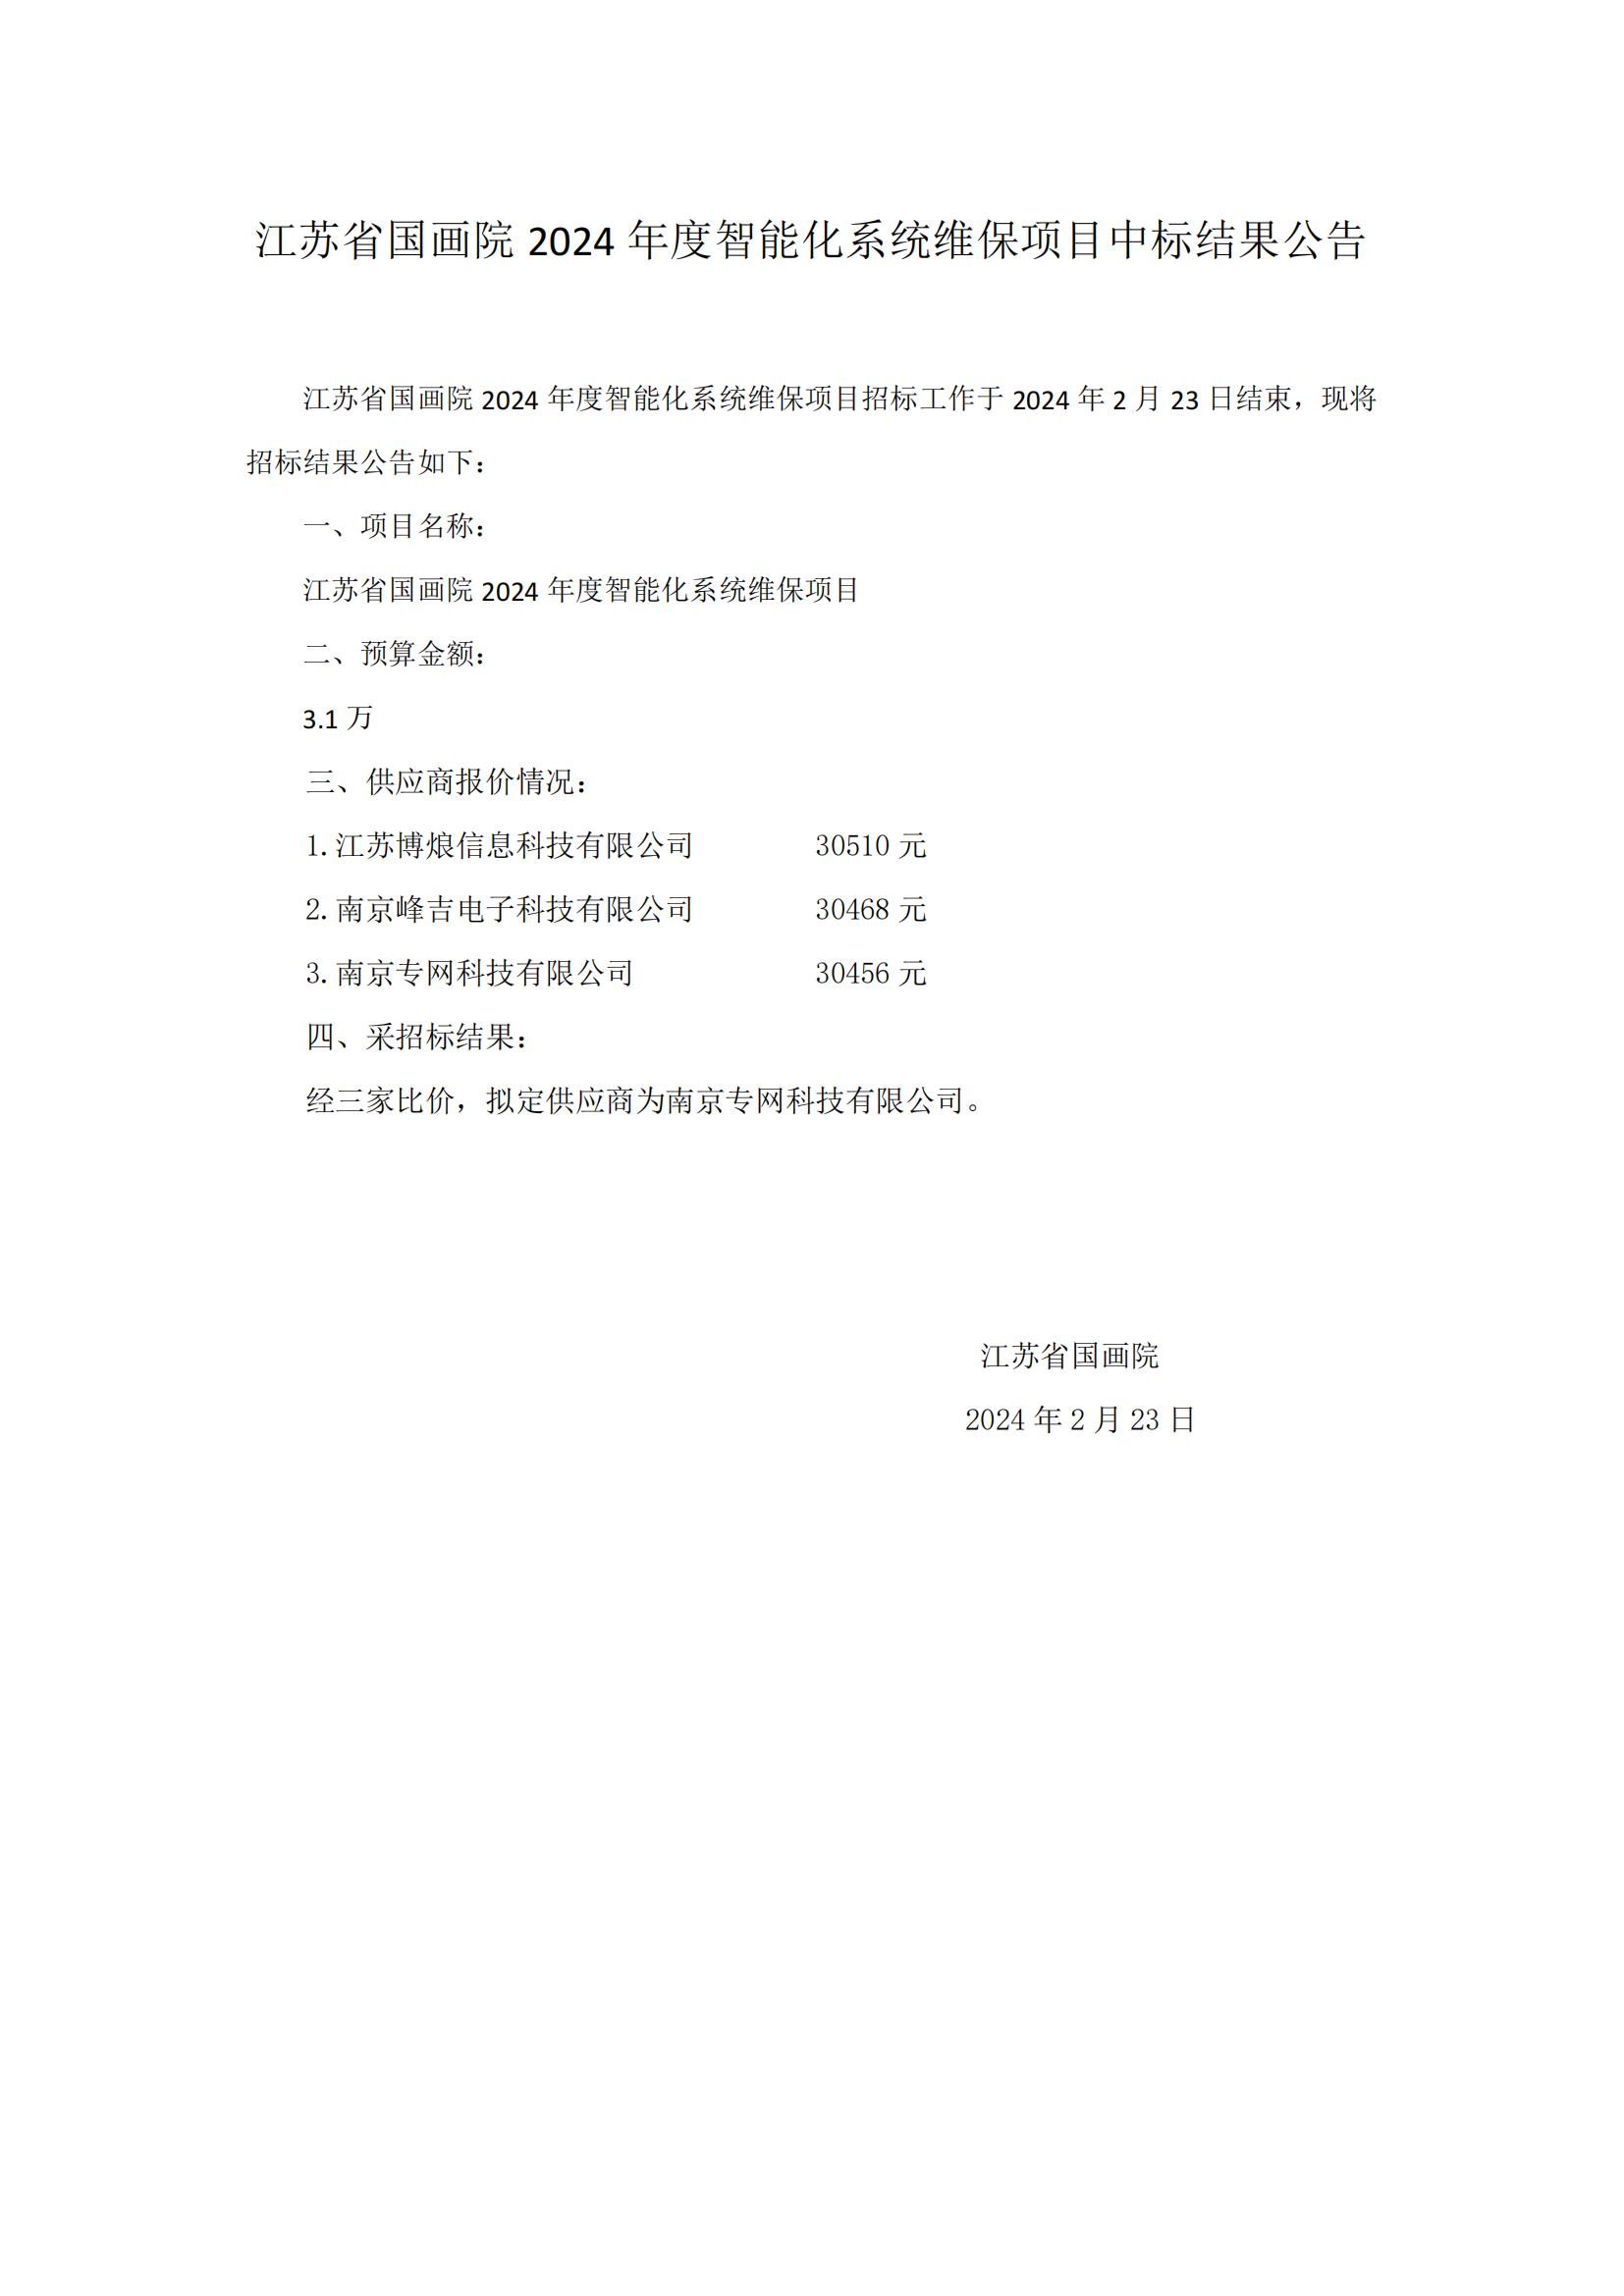 江苏省国画院2024年度智能化系统维保项目中标结果公告_00.jpg